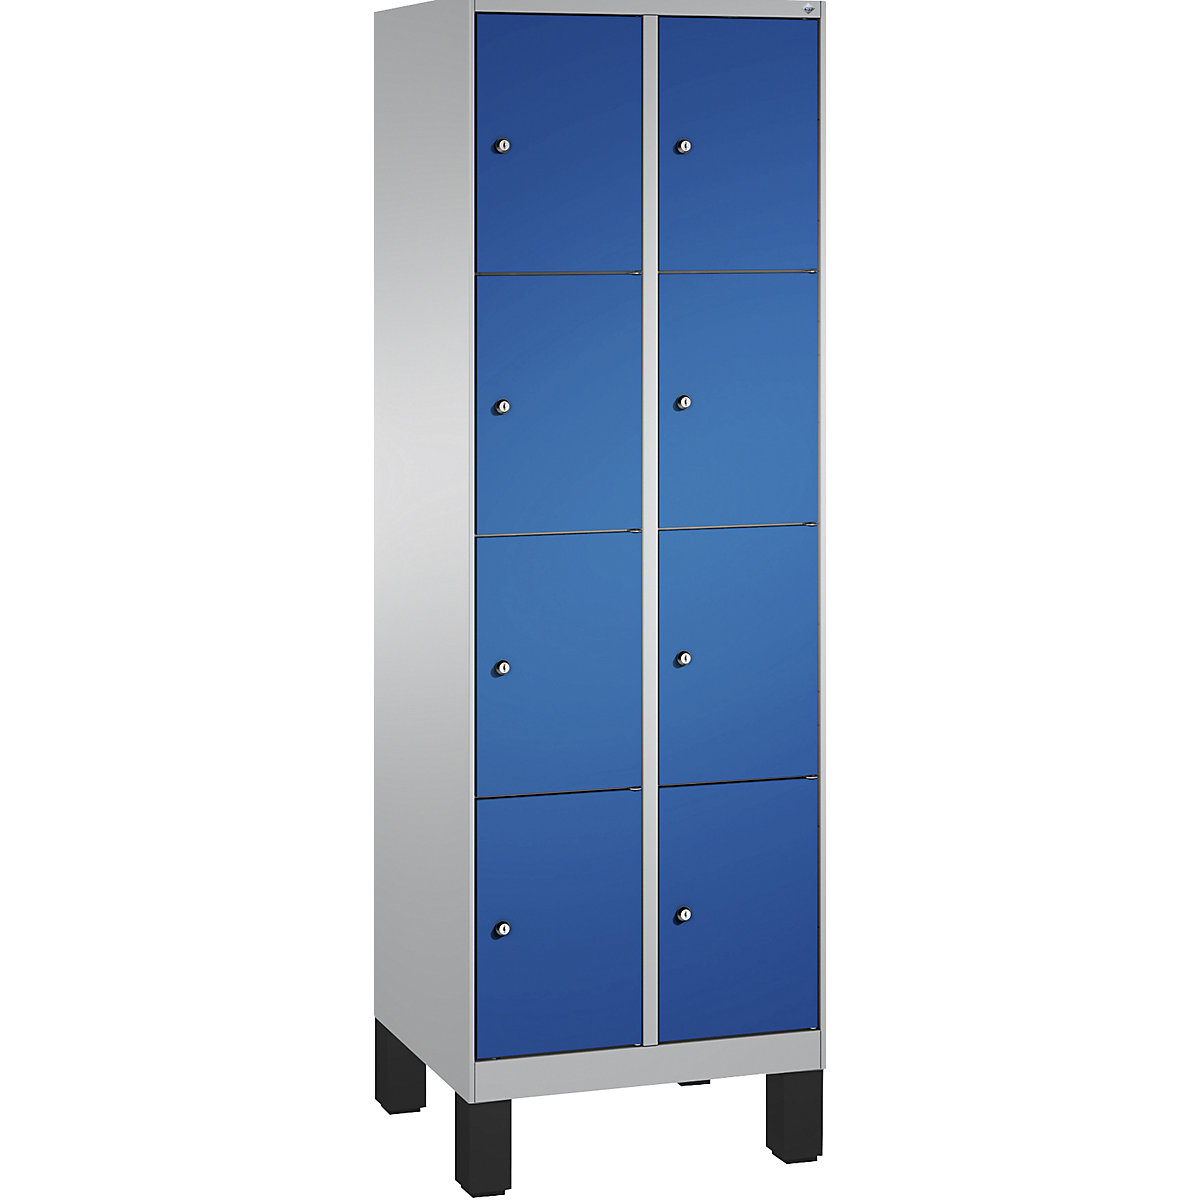 Armoire à casiers sur pieds EVOLO – C+P, 2 compartiments, 4 casiers chacun, largeur compartiments 300 mm, aluminium / bleu gentiane-6